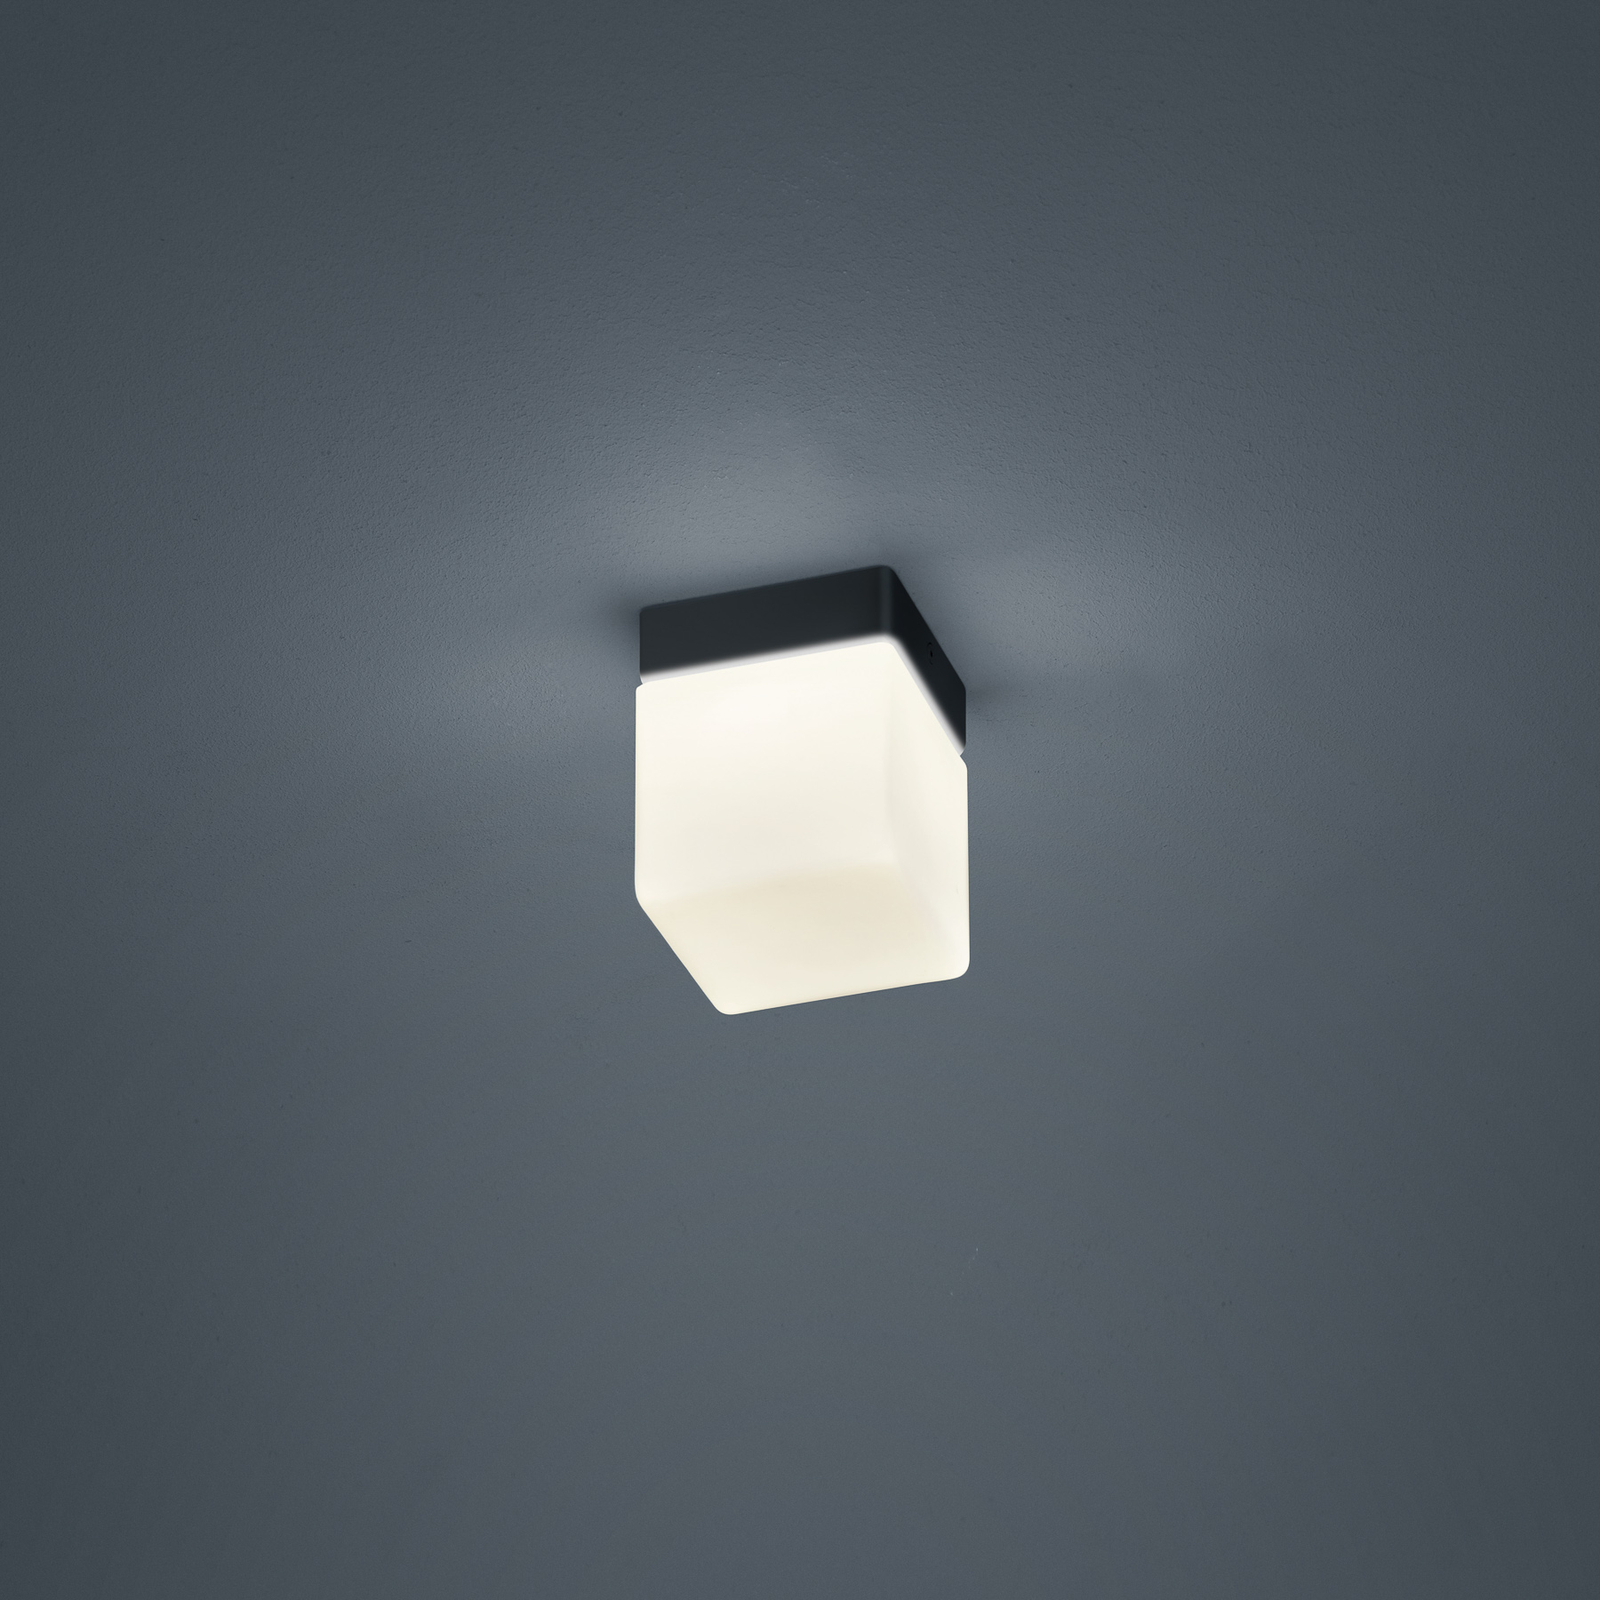 Helestra Keto LED plafondlamp, kubus, zwart